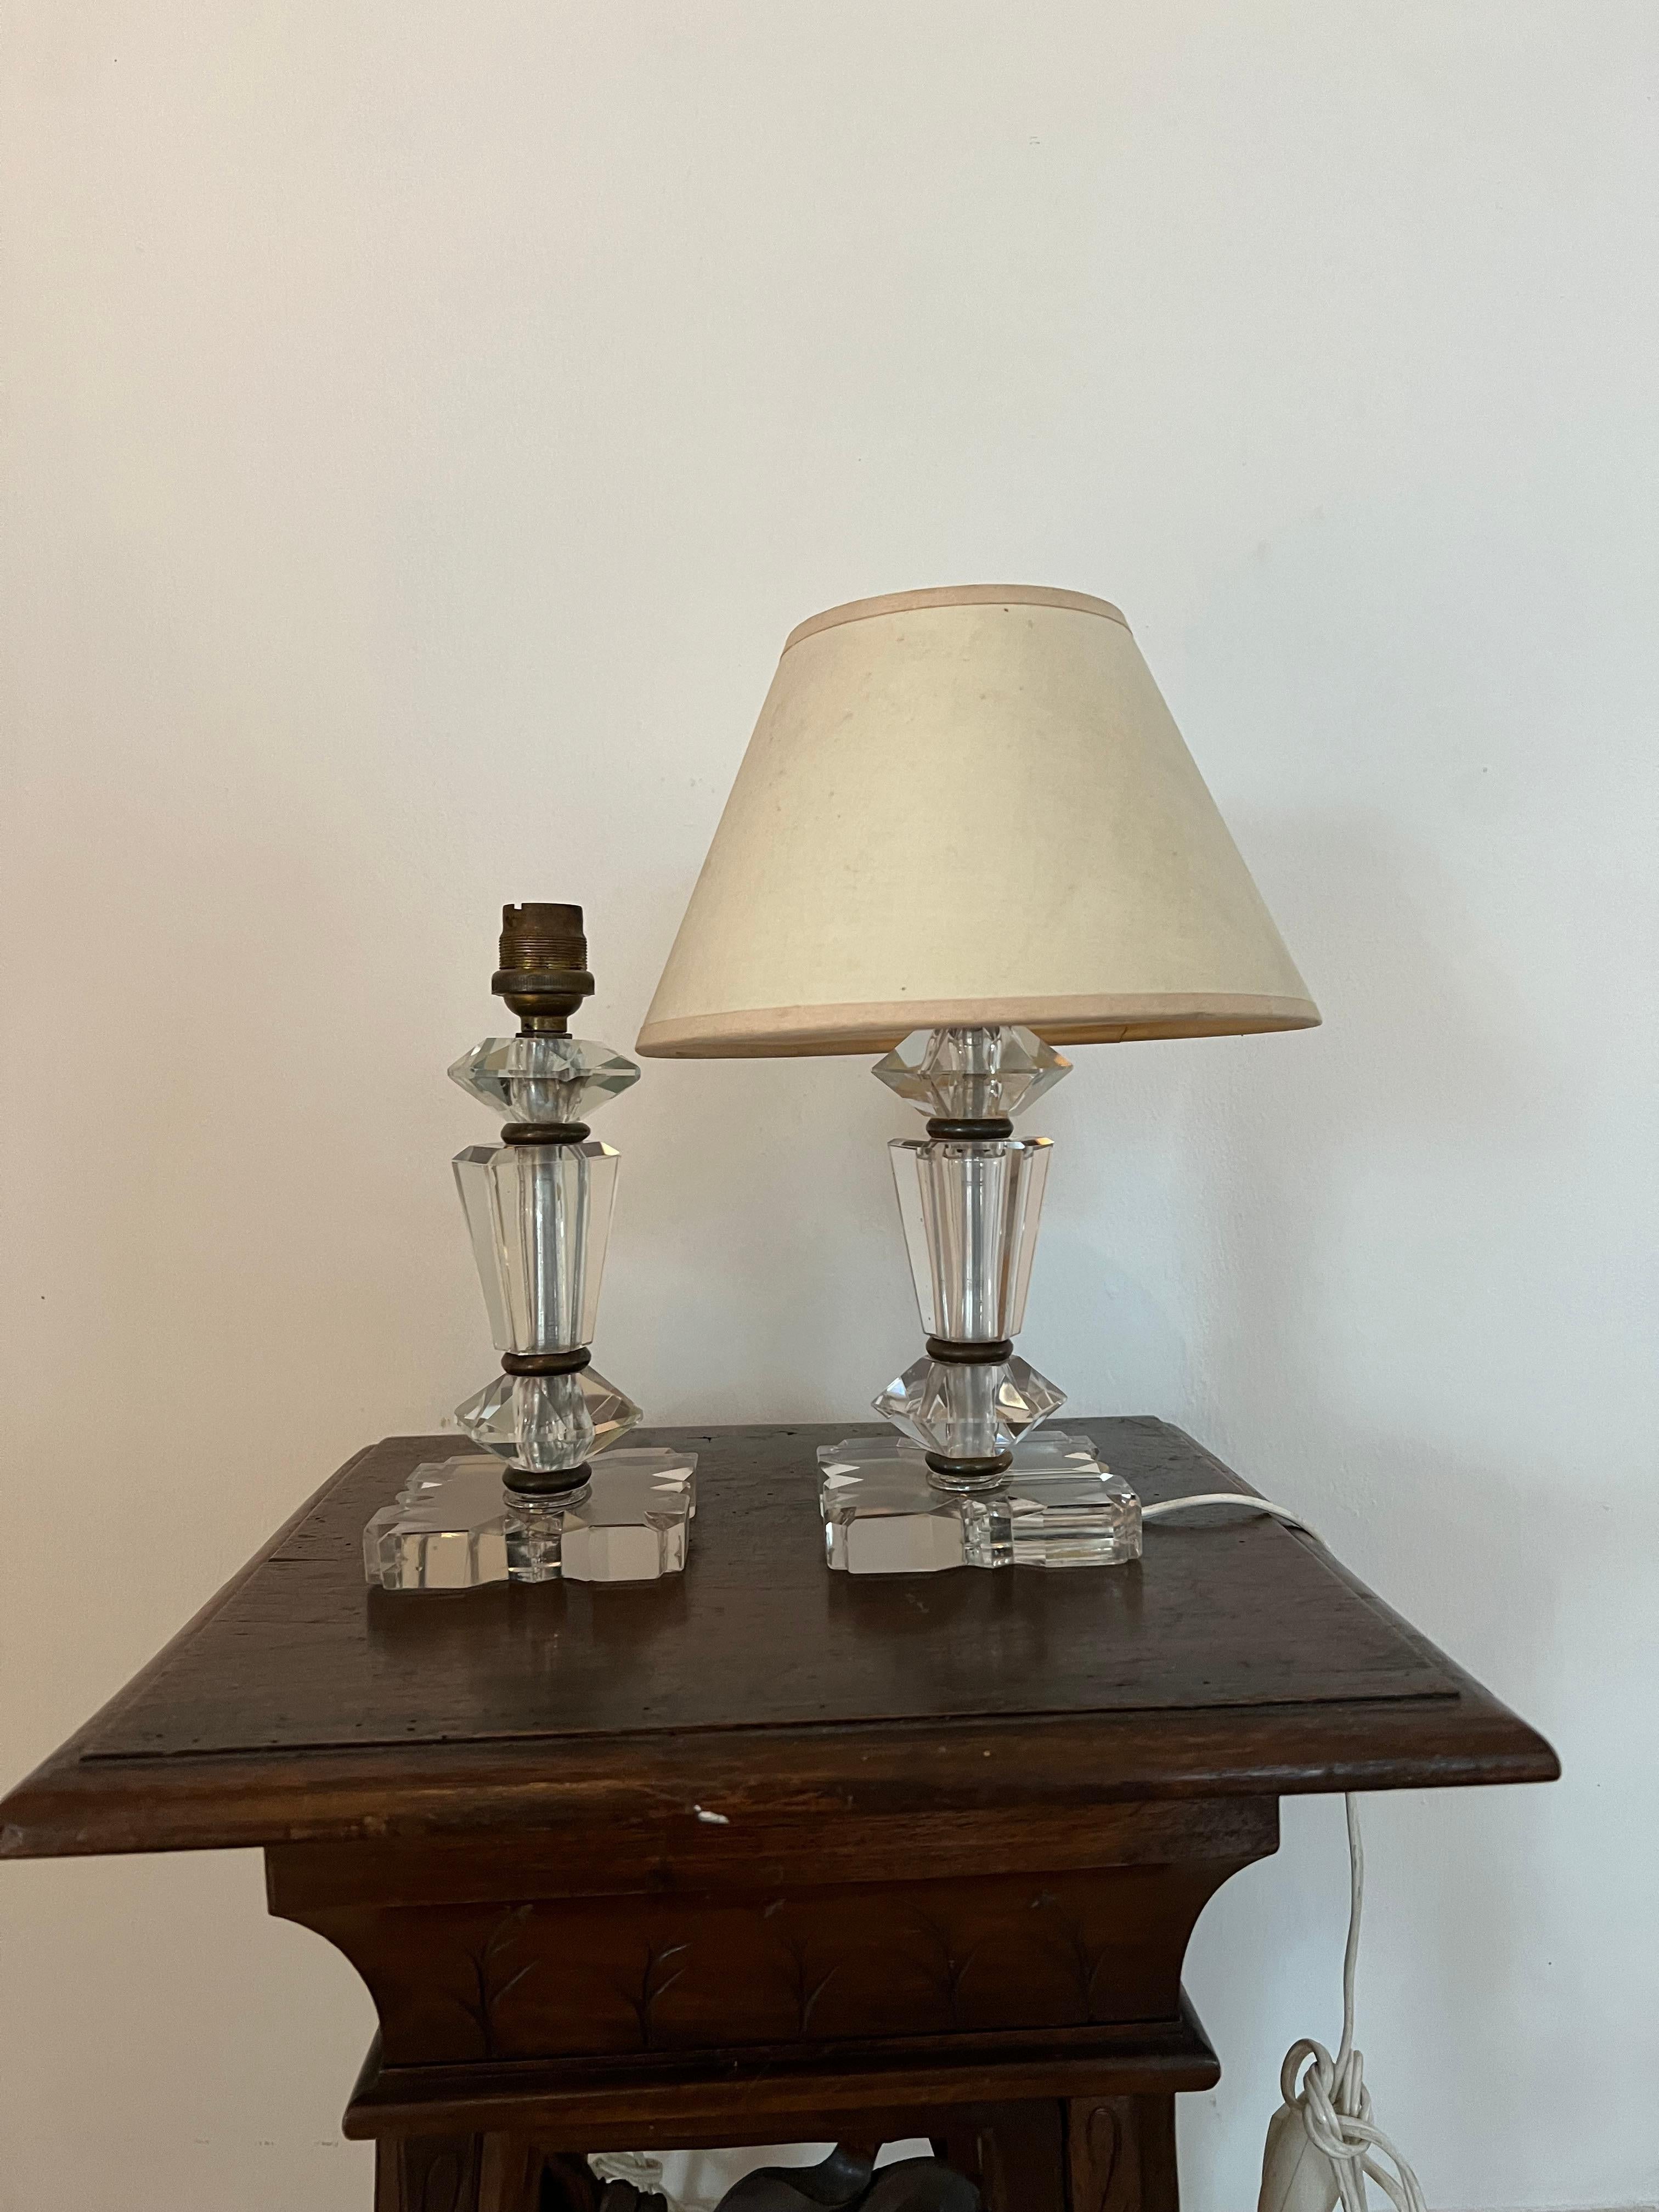 Belle paire de lampes de table dans le style de Baccarat et Jacques Adnet mais elles ne sont pas marquées.
Fabriqué en verre au plomb coupé à la main.
France vers 1940.
Les pièces 